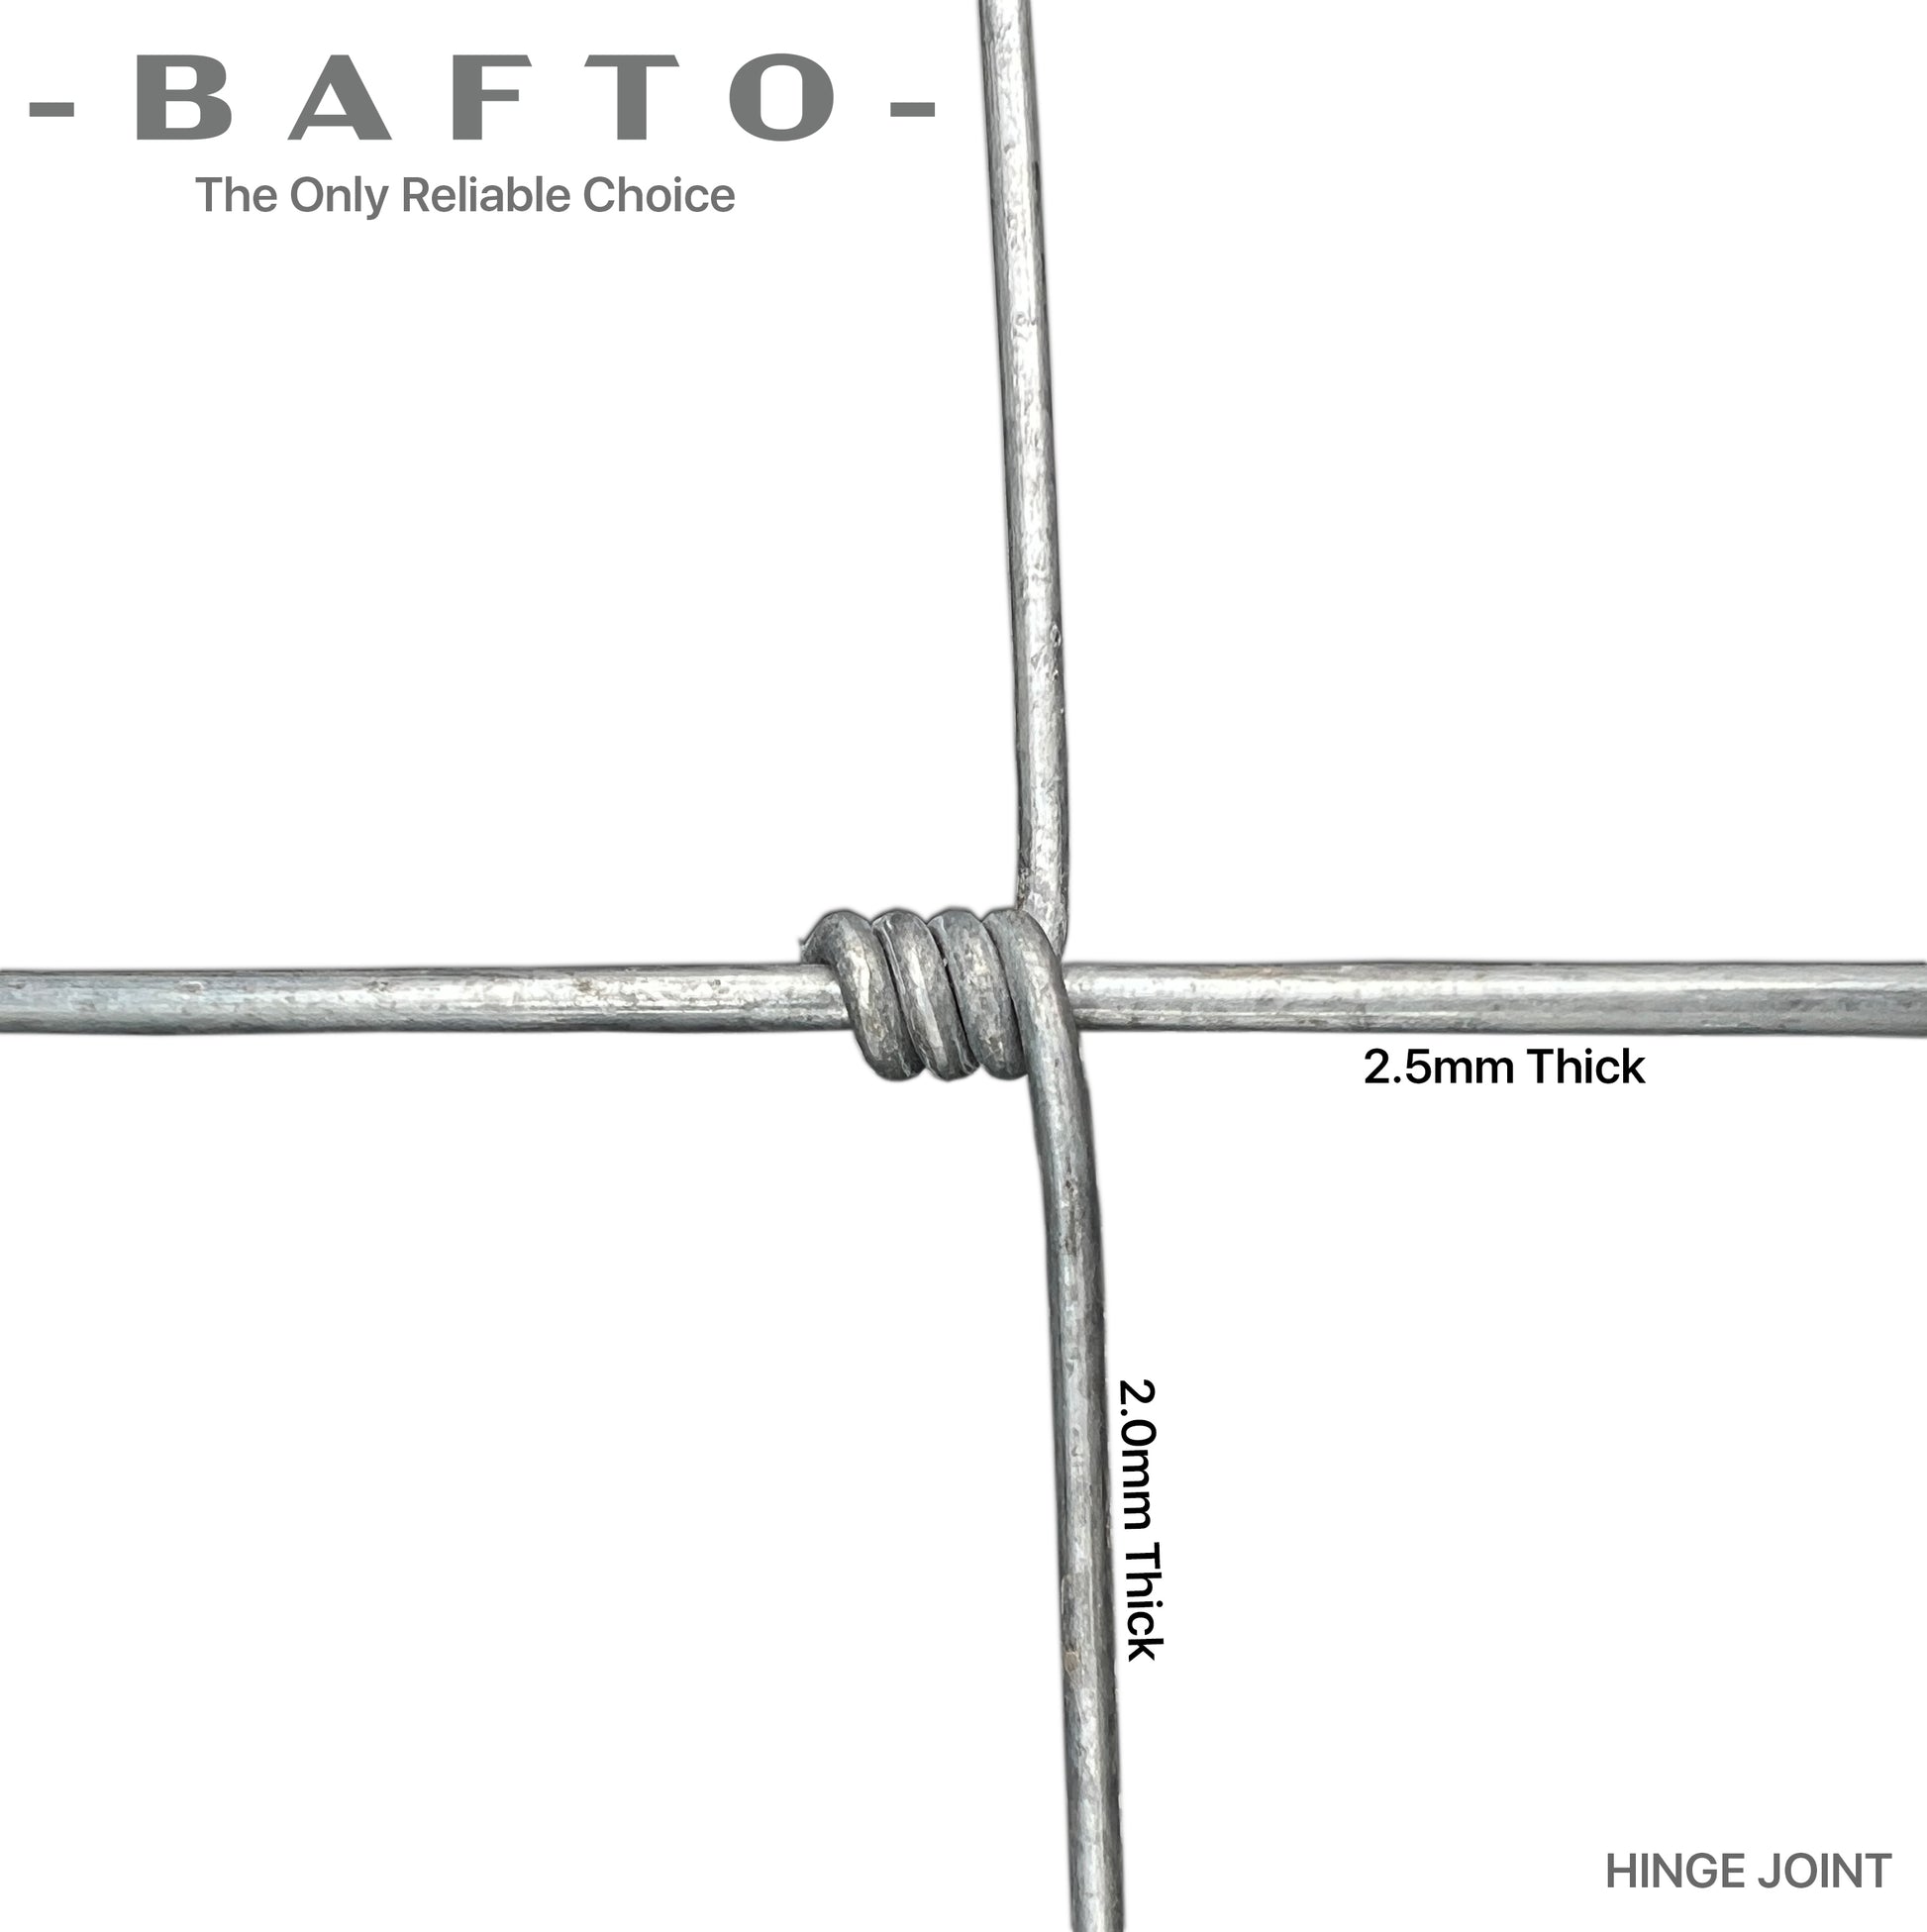 Farm fencing H1.2m (100m Roll) - Bafto